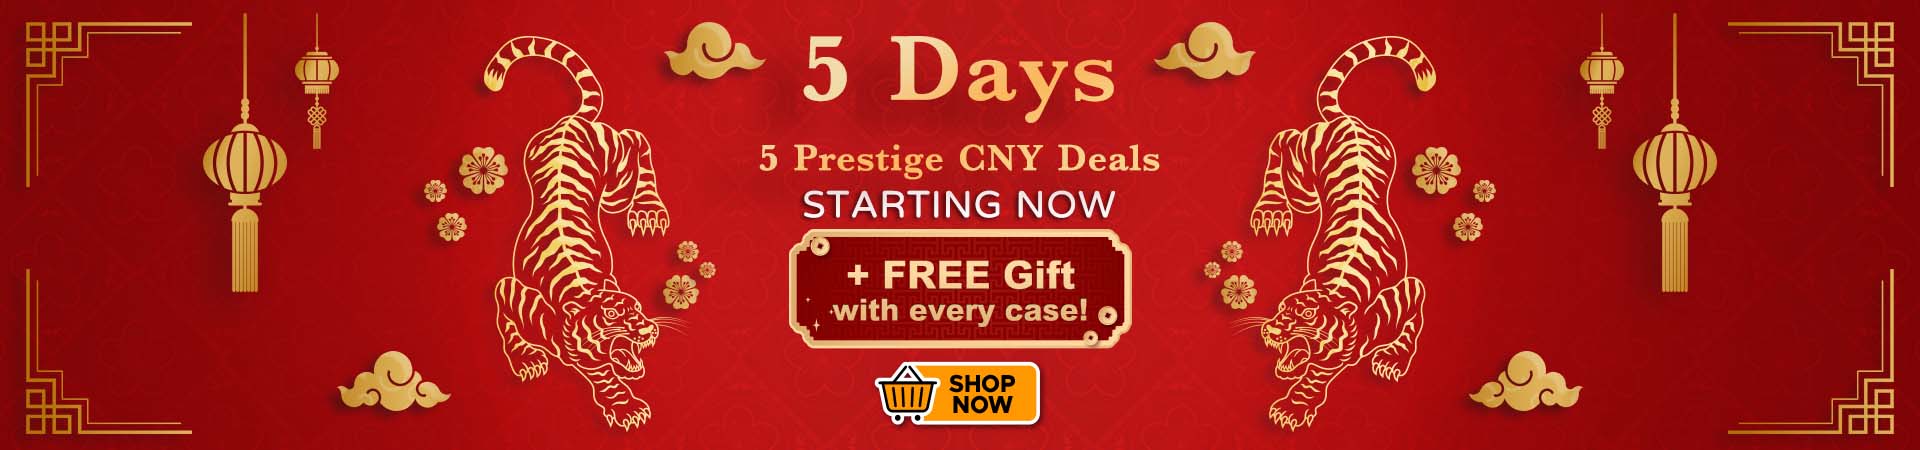 5 days of Prestige CNY Wine Deals